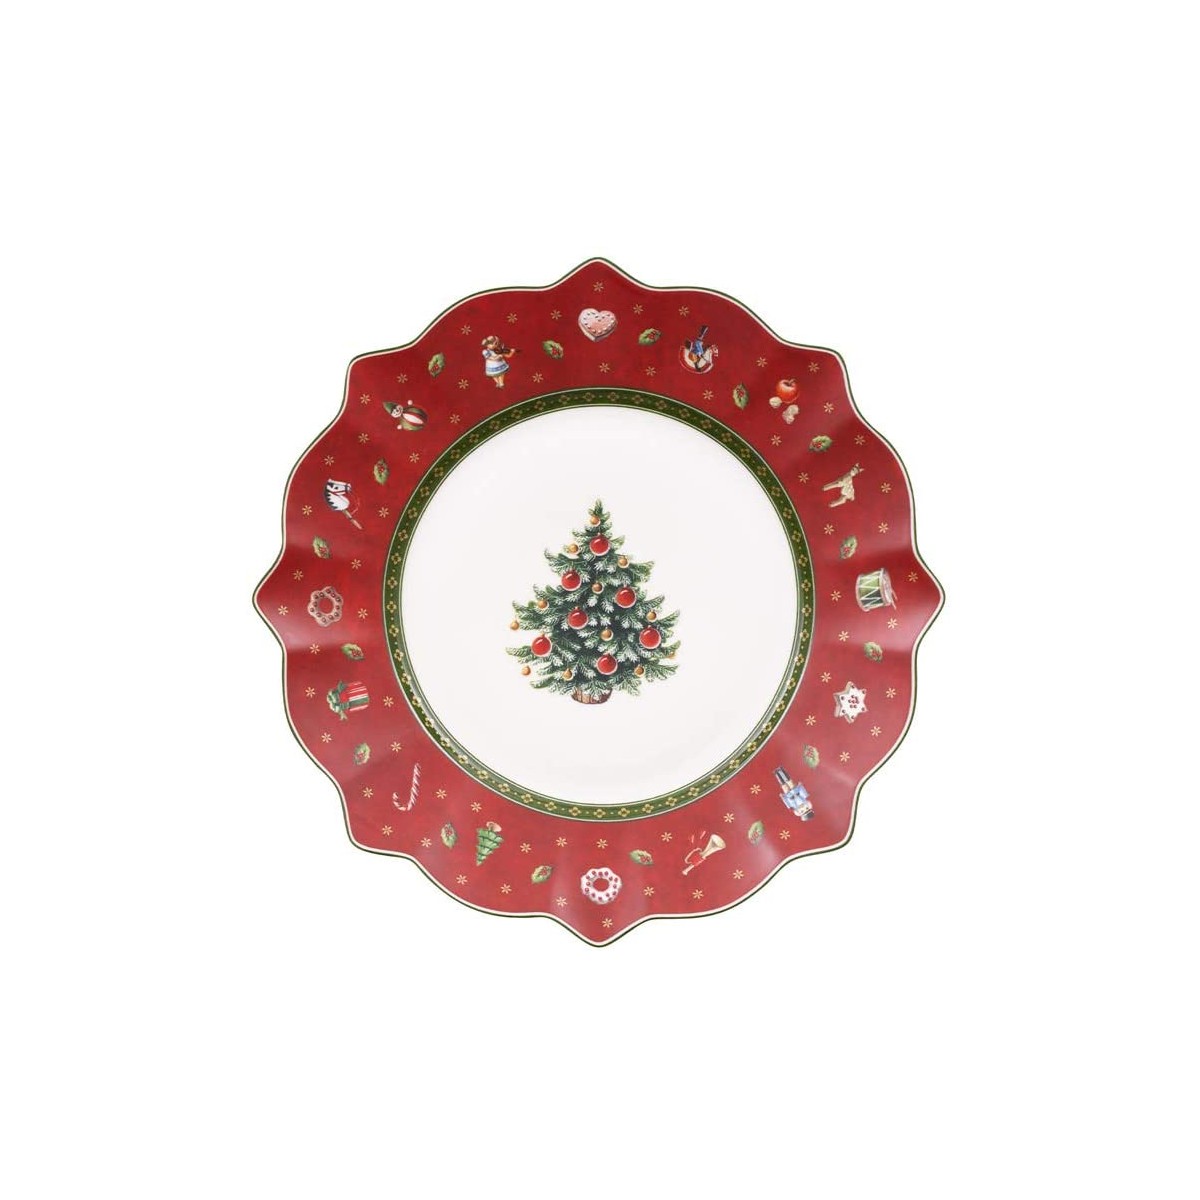 Piatto vassoio in porcellana di Natale, con decorazioni, da collezione